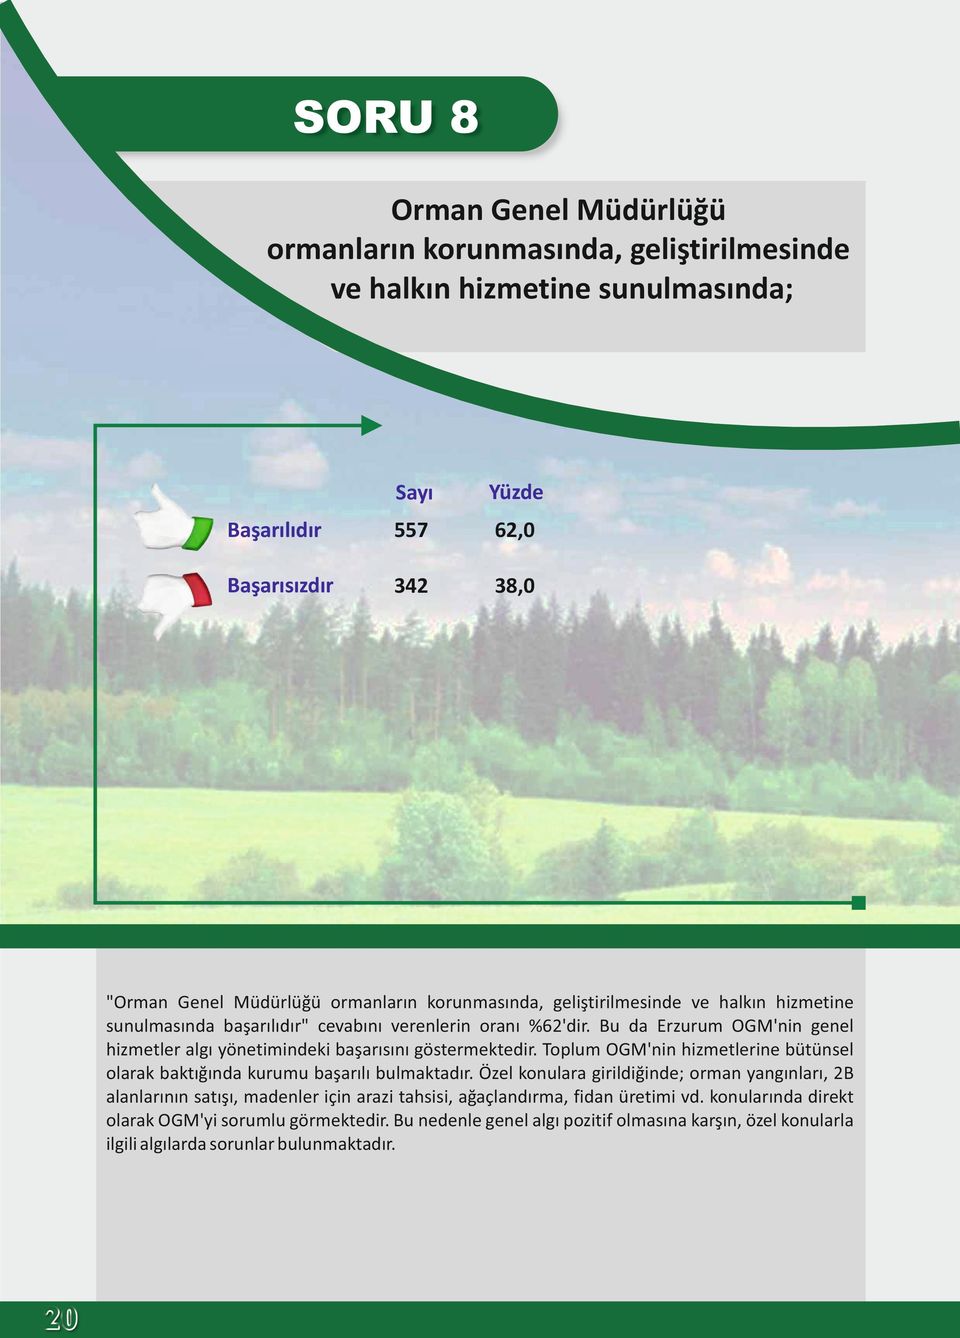 Bu da Erzurum OGM'nin genel hizmetler algı yönetimindeki başarısını göstermektedir. Toplum OGM'nin hizmetlerine bütünsel olarak baktığında kurumu başarılı bulmaktadır.